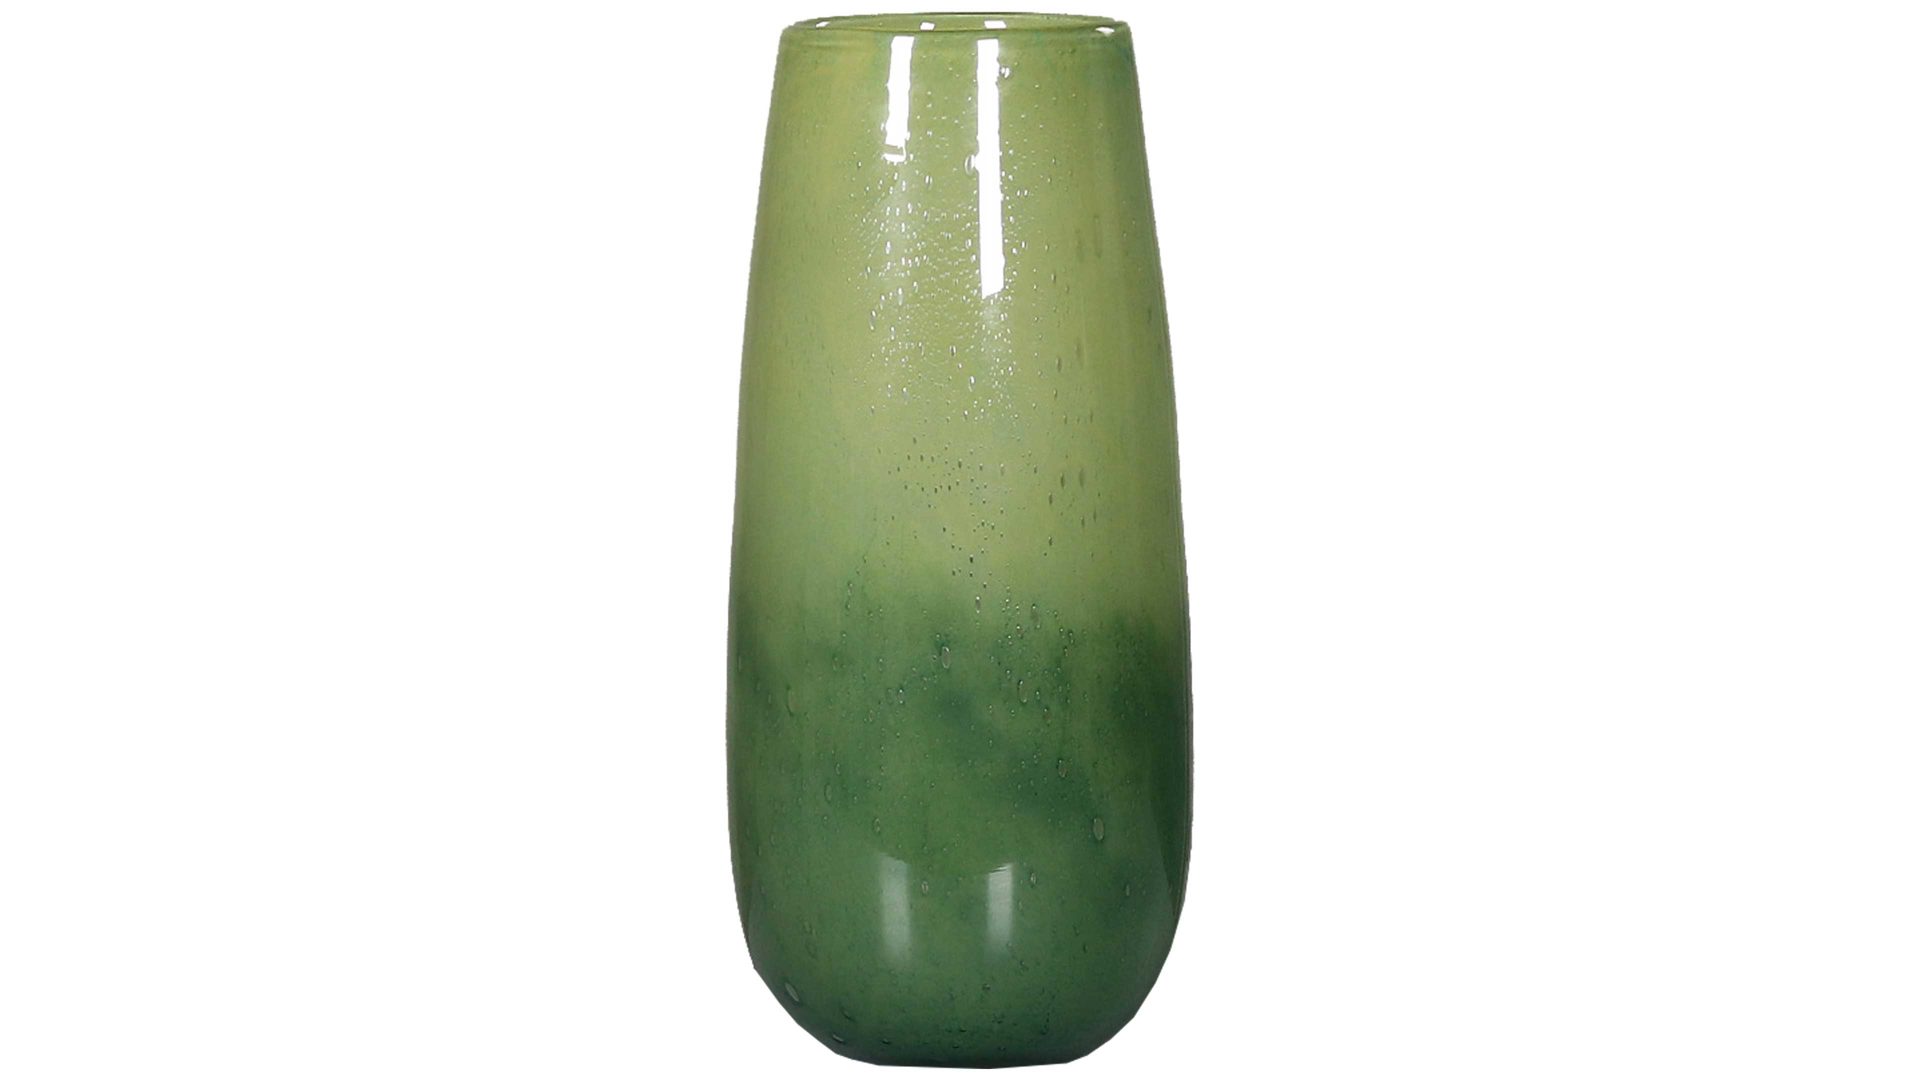 Vase Interliving BEST BUDDYS! aus Glas in Grün Interliving BEST BUDDYS! Blumenvase grünes Glas - Höhe ca. 36 cm